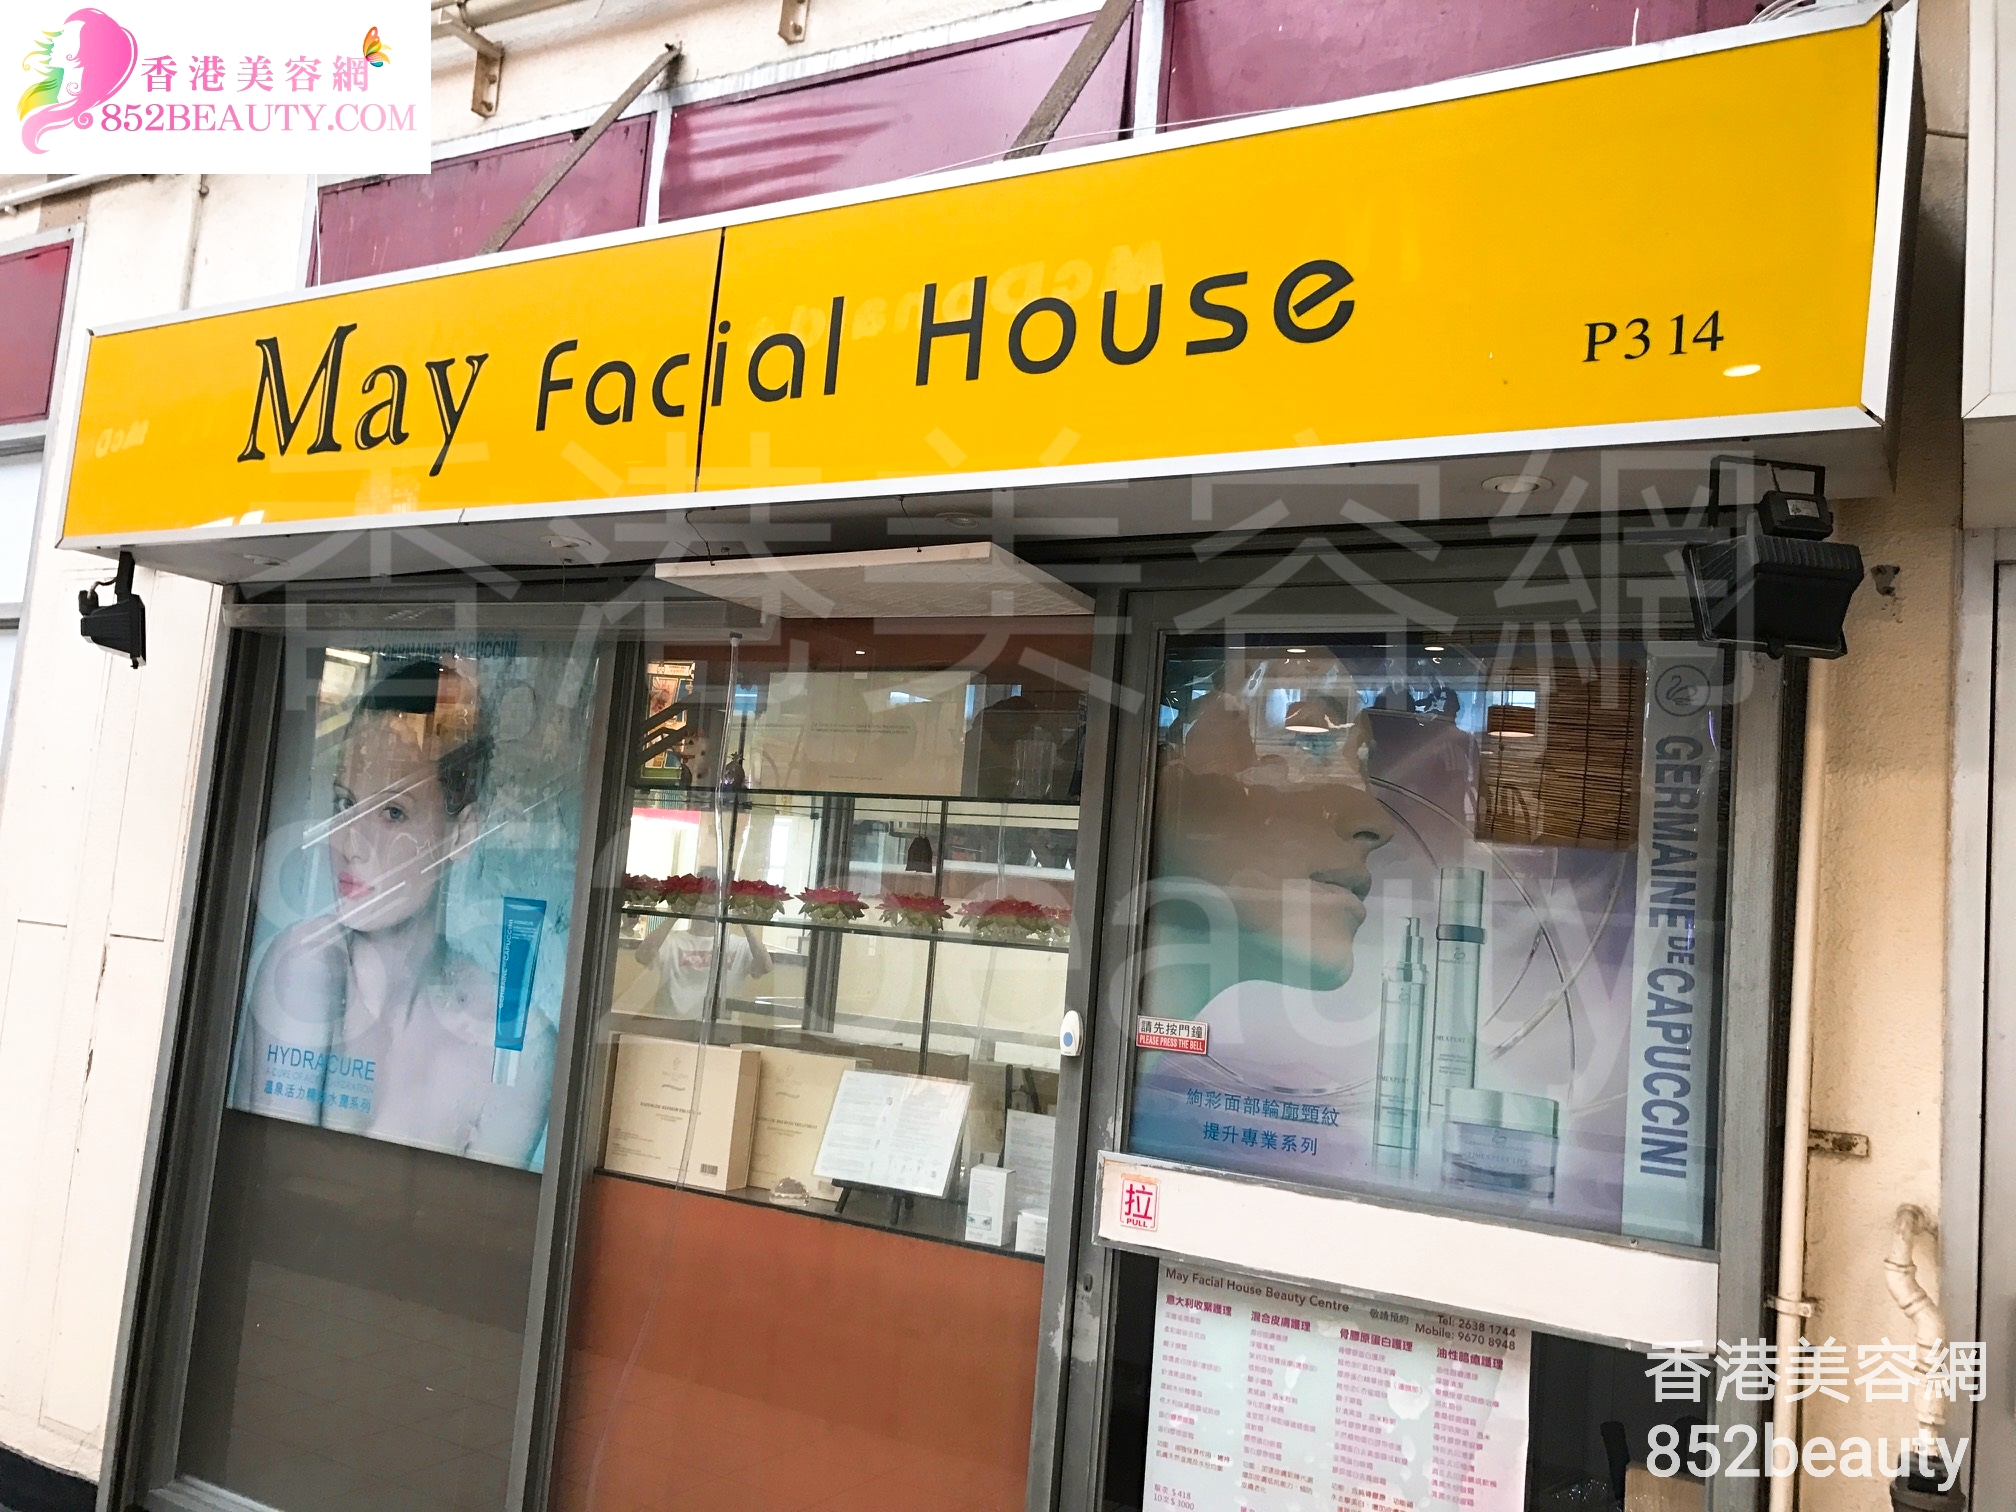 Beauty Salon / Beautician: May Facial House